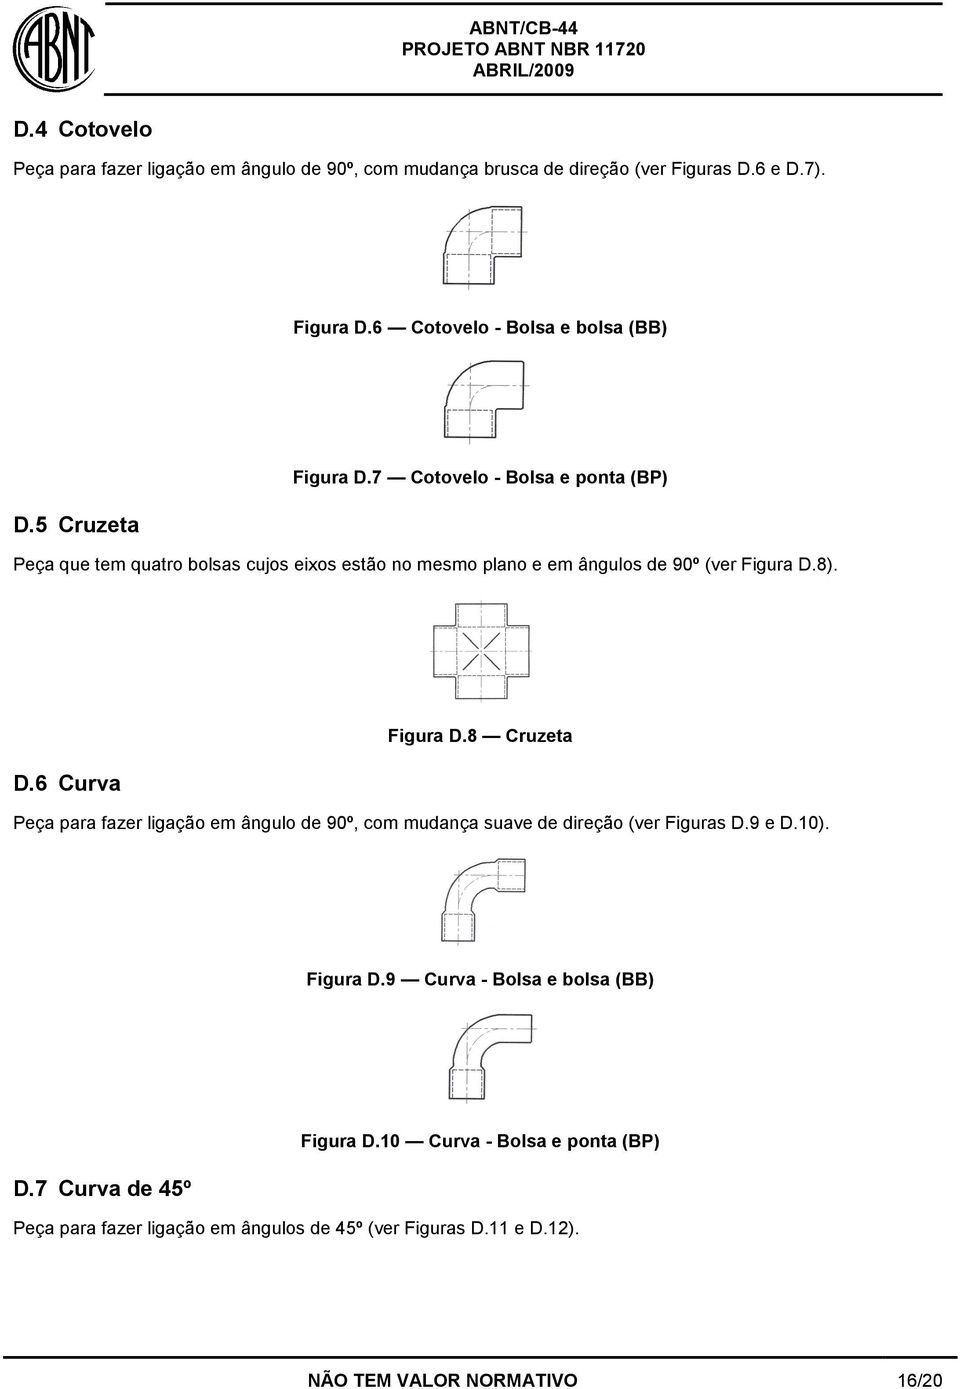 8 Cruzeta Peça para fazer ligação em ângulo de 90º, com mudança suave de direção (ver Figuras D.9 e D.10). Figura D.9 Curva - Bolsa e bolsa (BB) D.